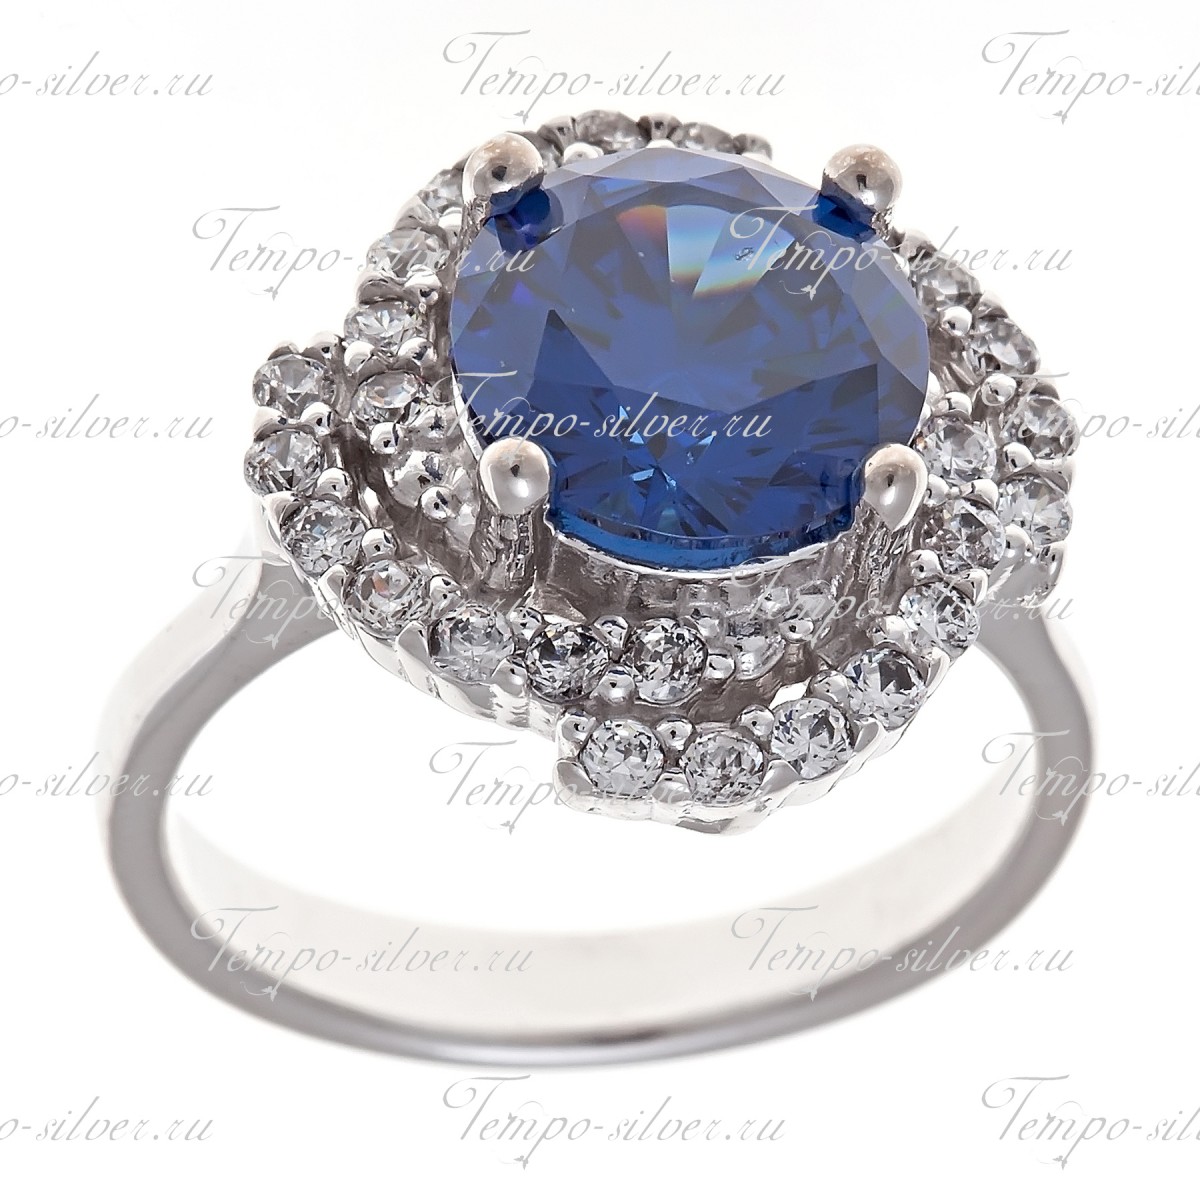 Кольцо из серебра с крупным синим камнем в центре композиции в виде цветка цена